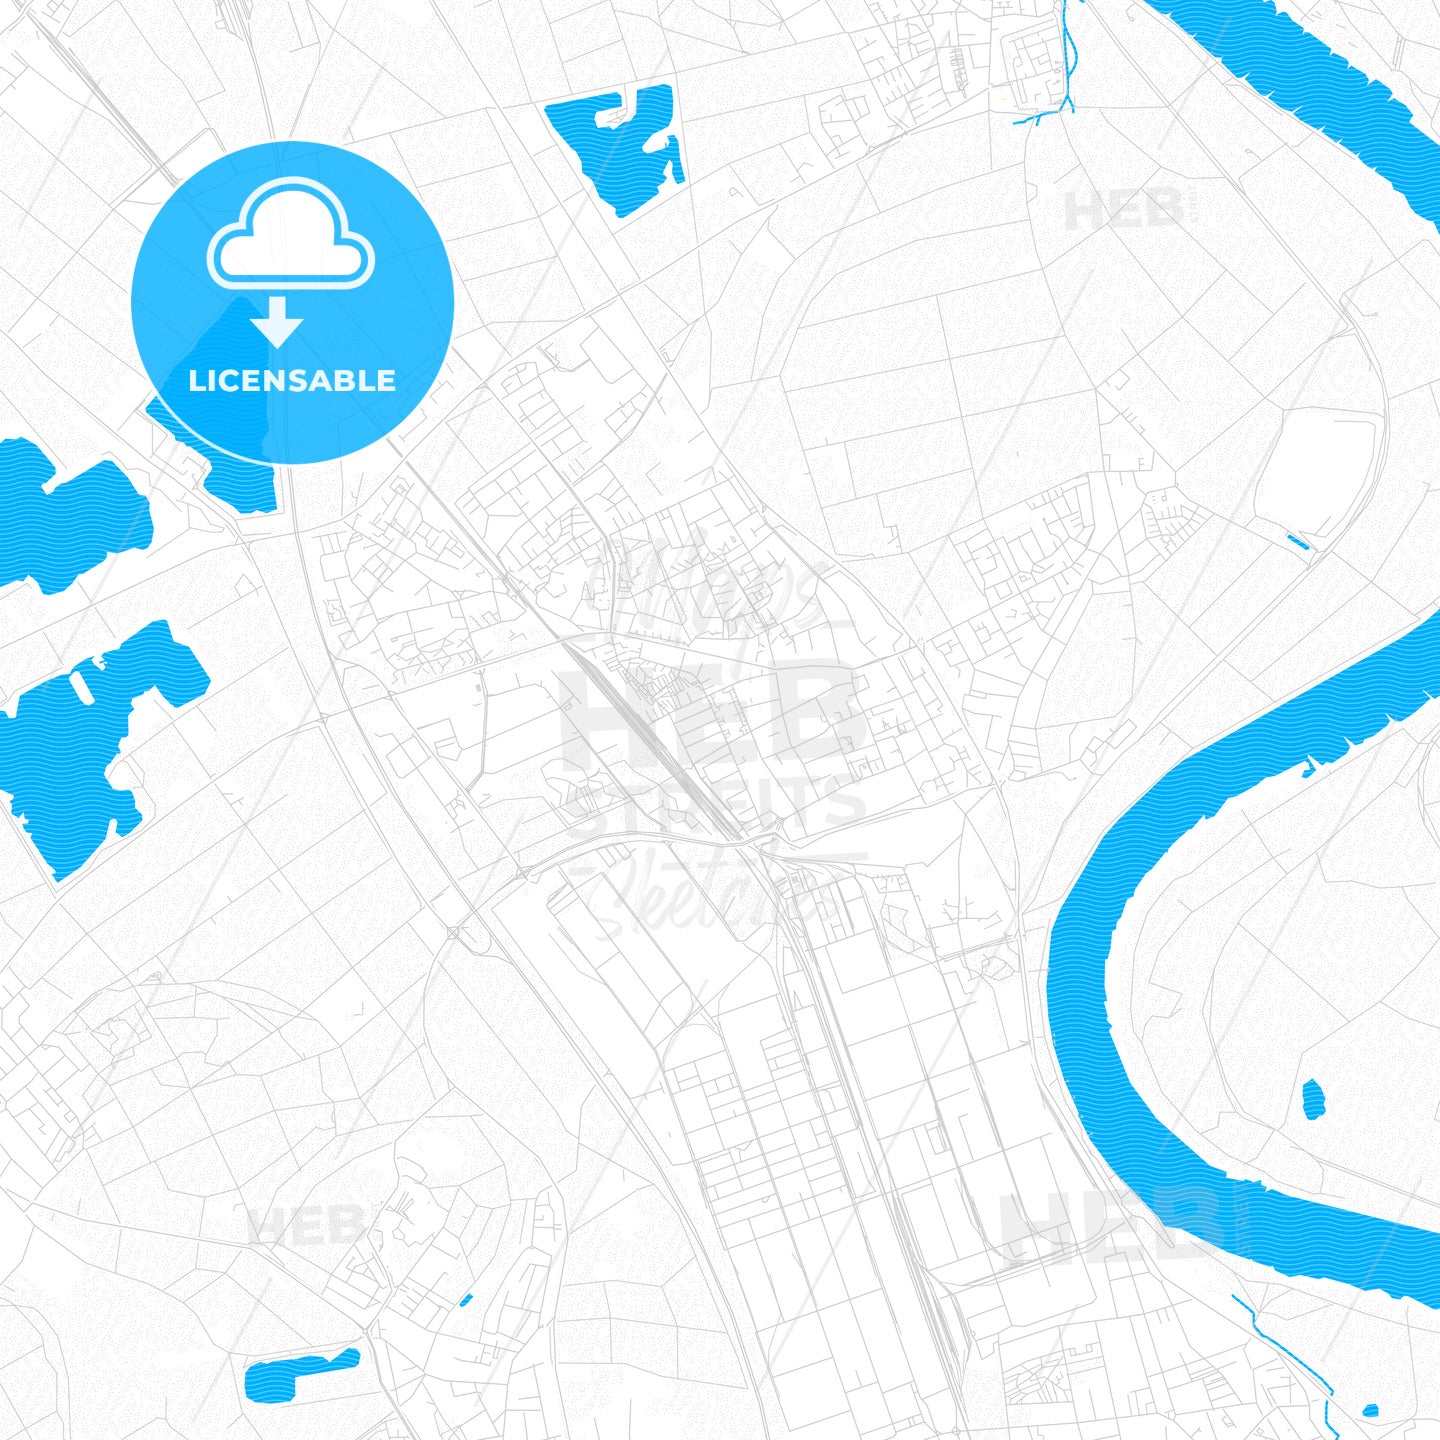 Dormagen, Germany PDF vector map with water in focus